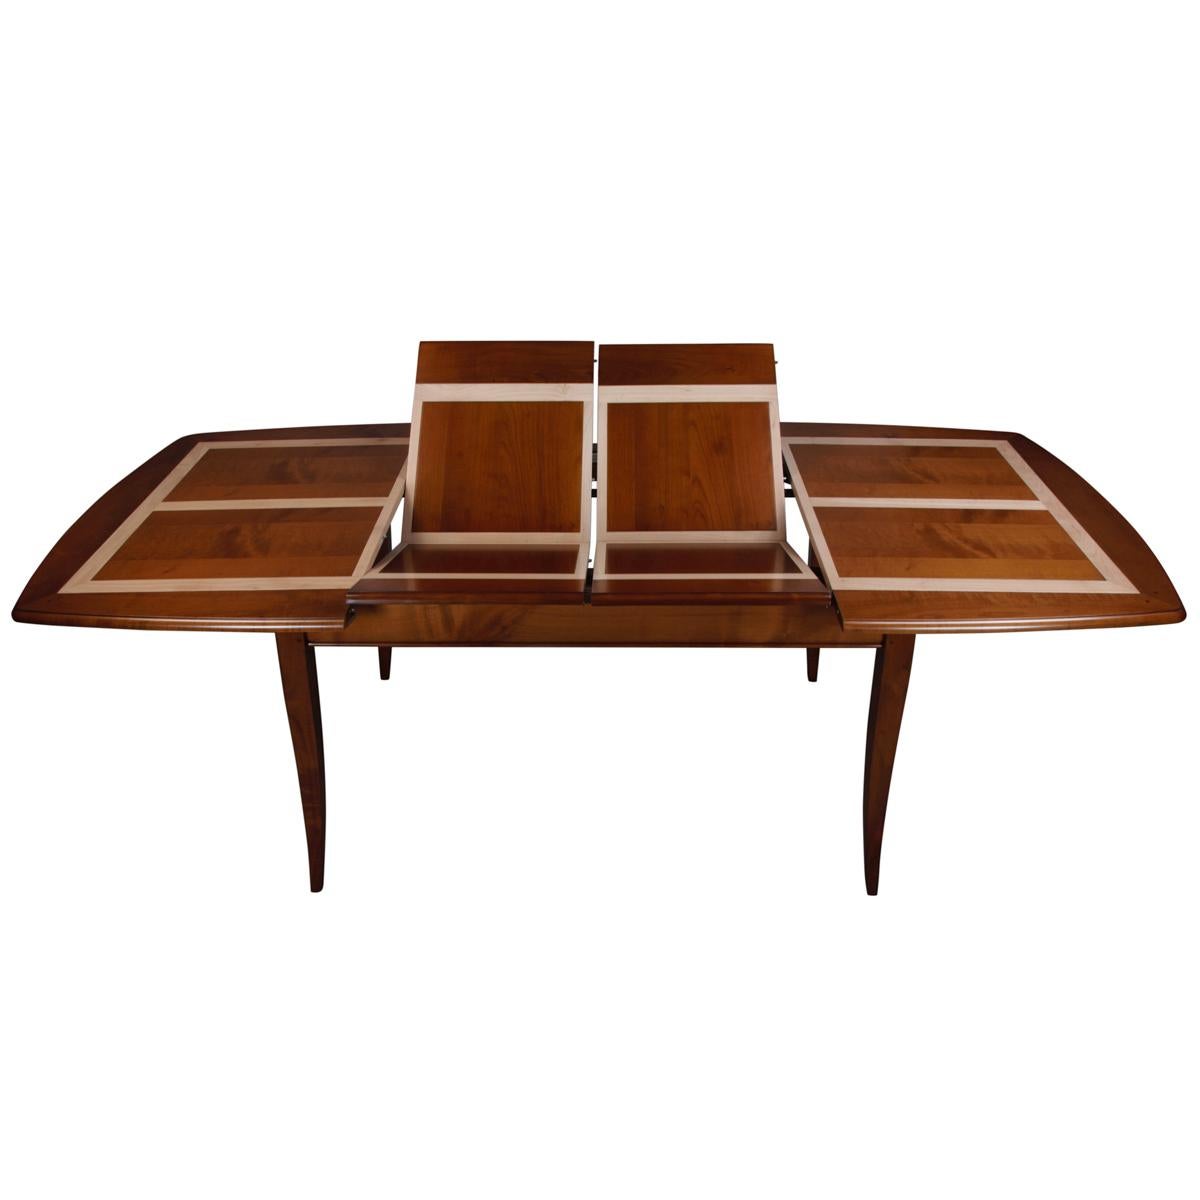 Dieser ausziehbare ovale Tisch mit 2 Flügeln ist typisch für klassische französische Möbelstücke und gehört zu unserer TRADITION-Kollektion, die die zeitlosen Klassiker mit dem Charme der französischen Landschaft aufgreift.

Die Pilaster, die